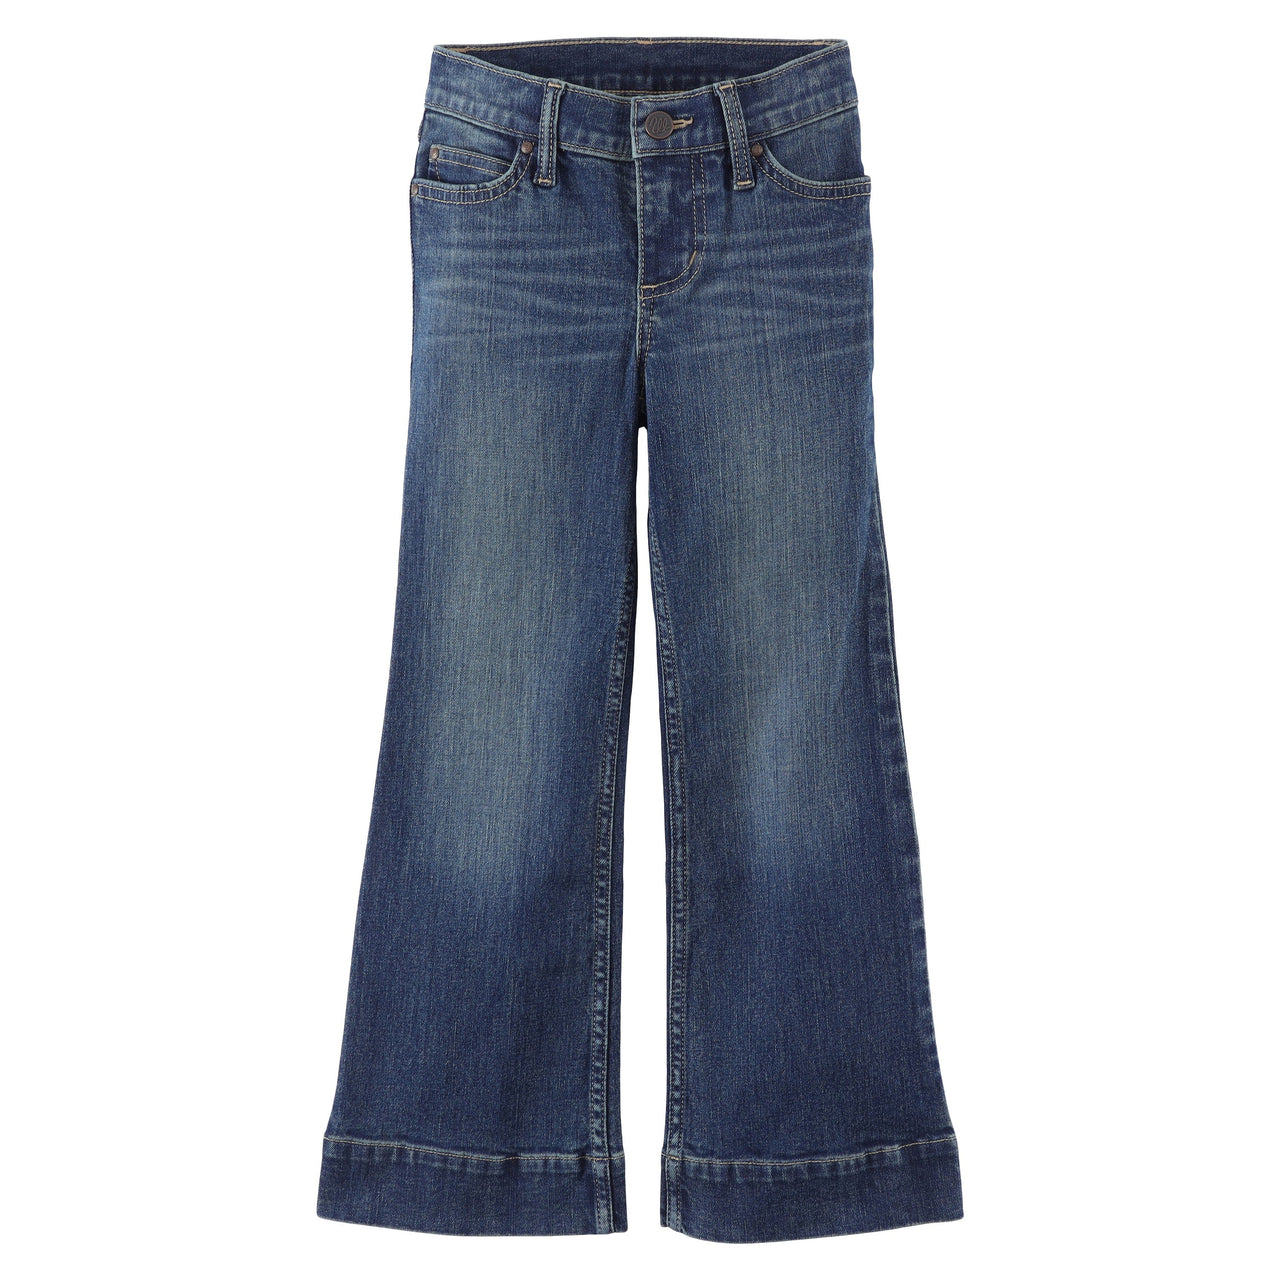 Wrangler Girl's Retro Trouser Jeans - Lindsey